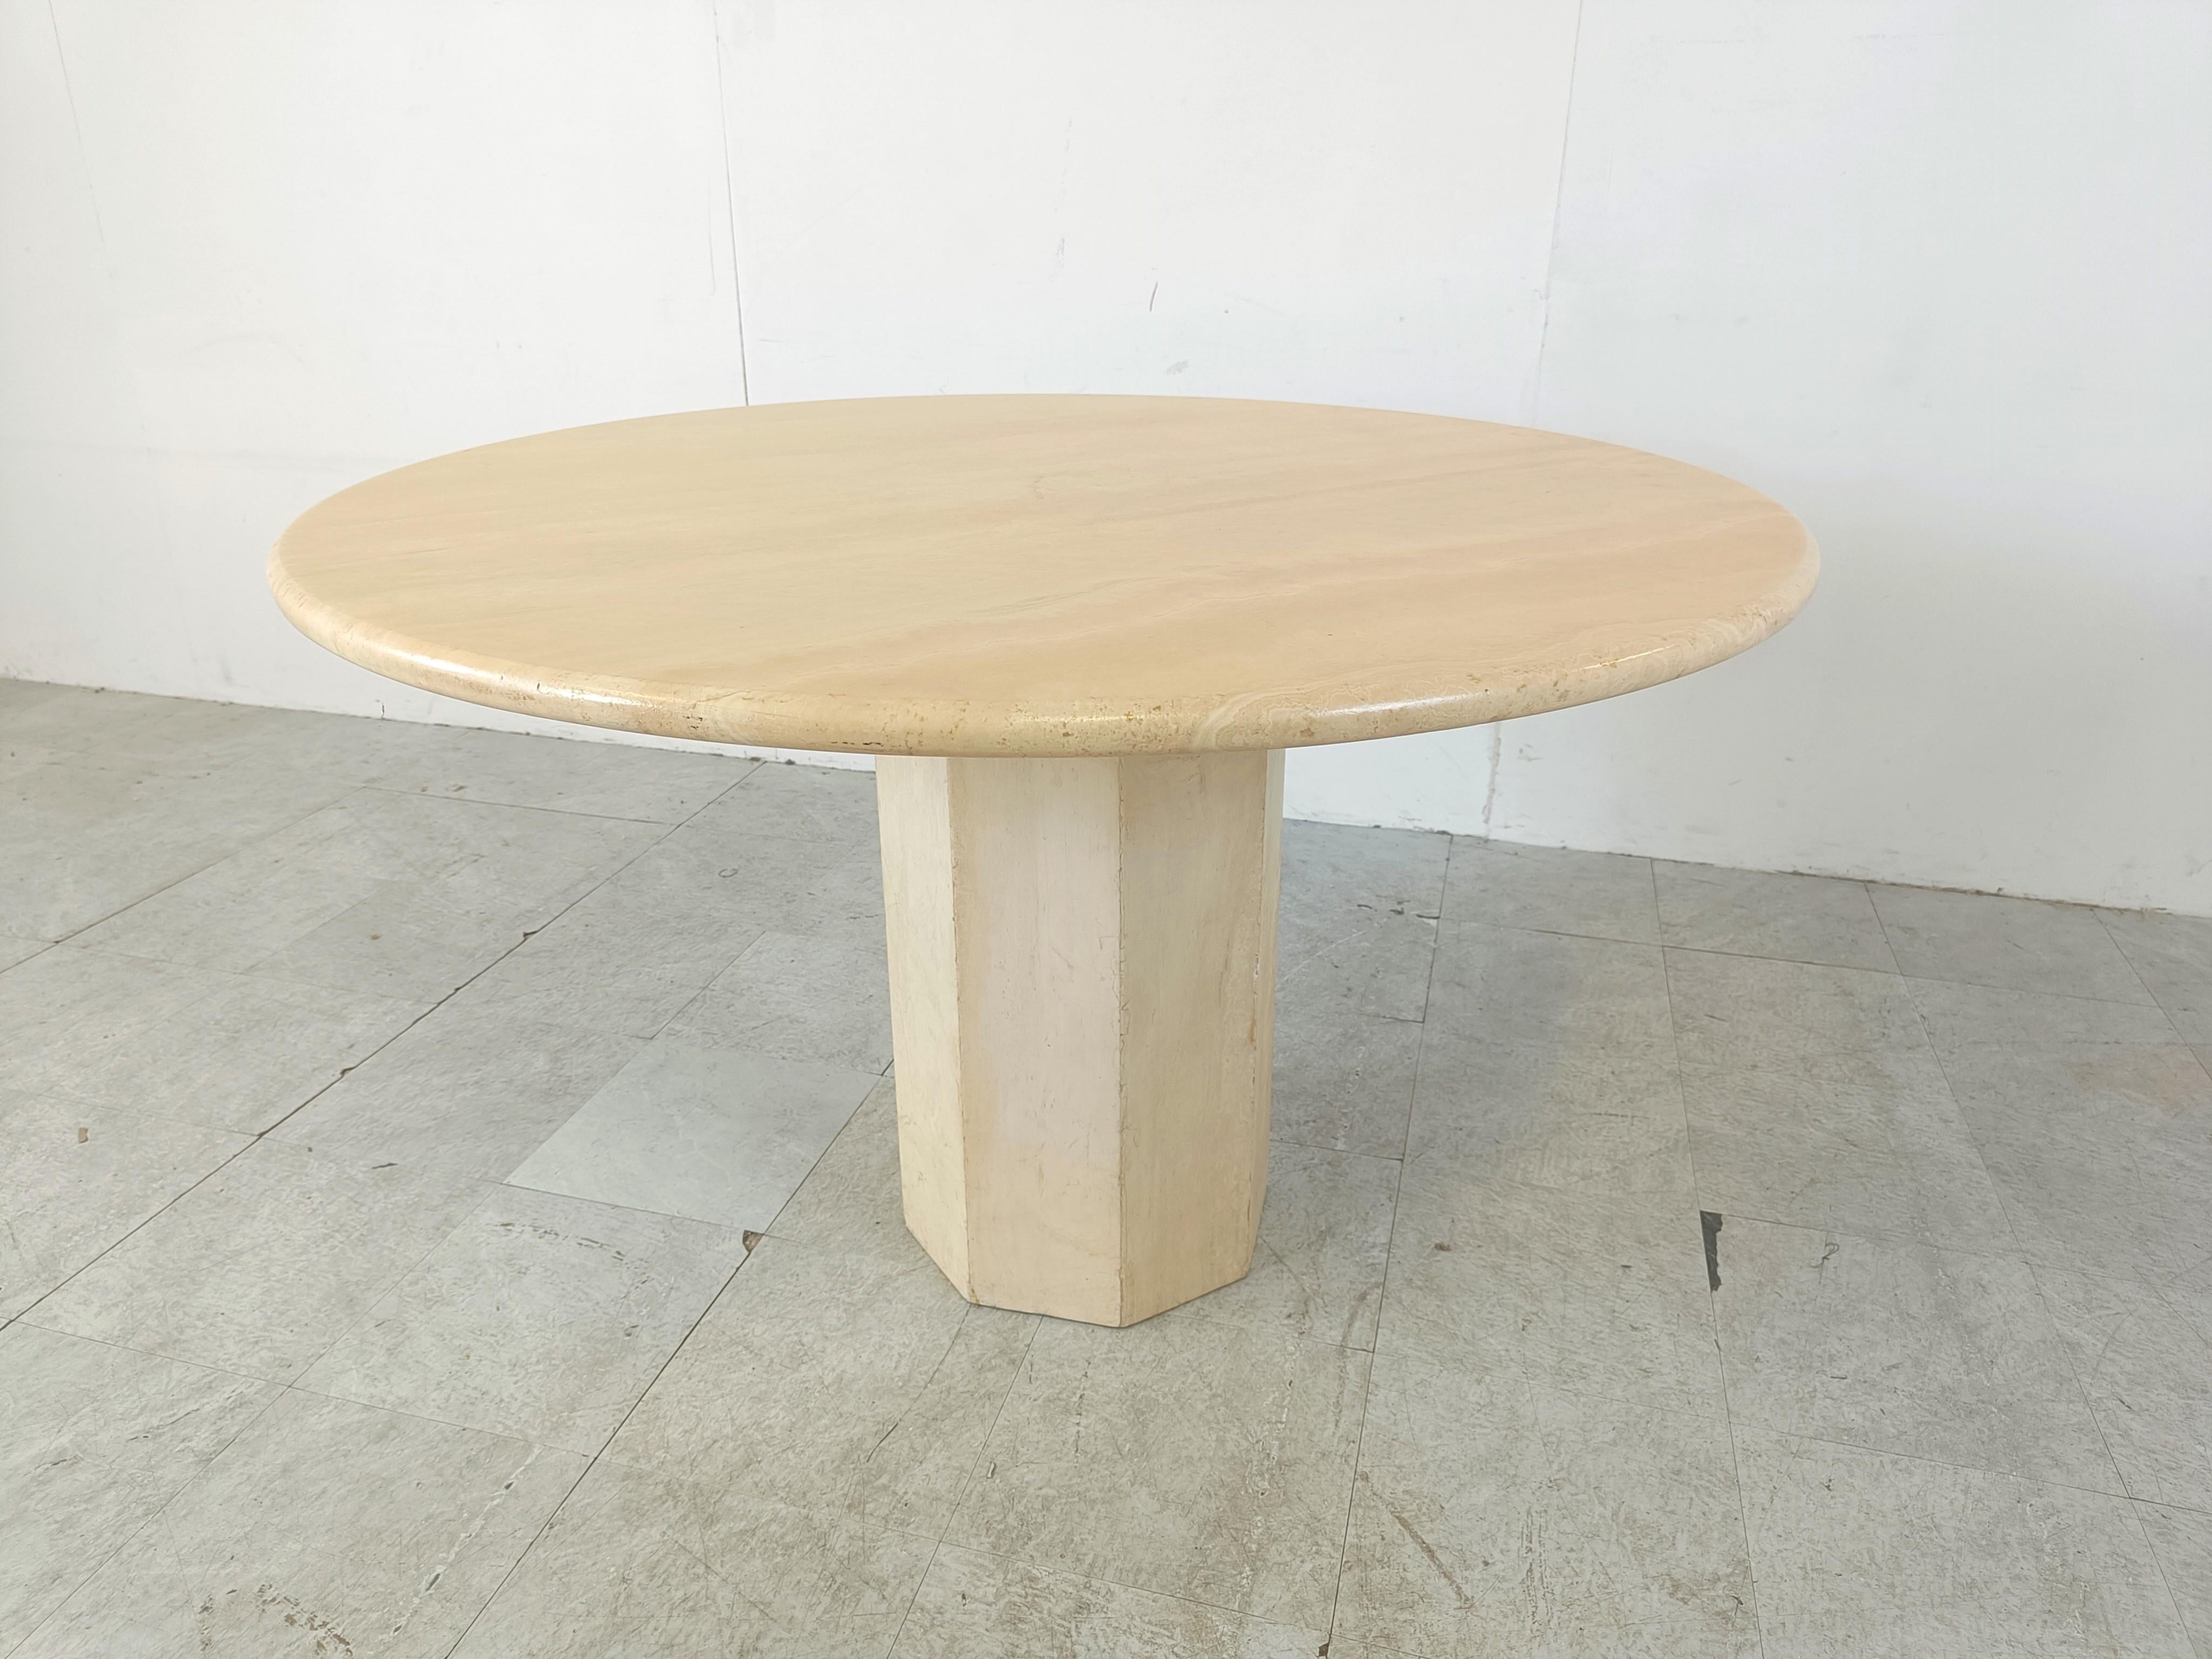 Schöner Esstisch oder Mitteltisch aus Travertinstein.

Hat eine zusätzliche Stütze für das Oberteil, um es stabiler zu machen. 

Elegante runde Tischplatte.

Guter Zustand

1970er Jahre - Italien

Höhe: 73cm/28.74